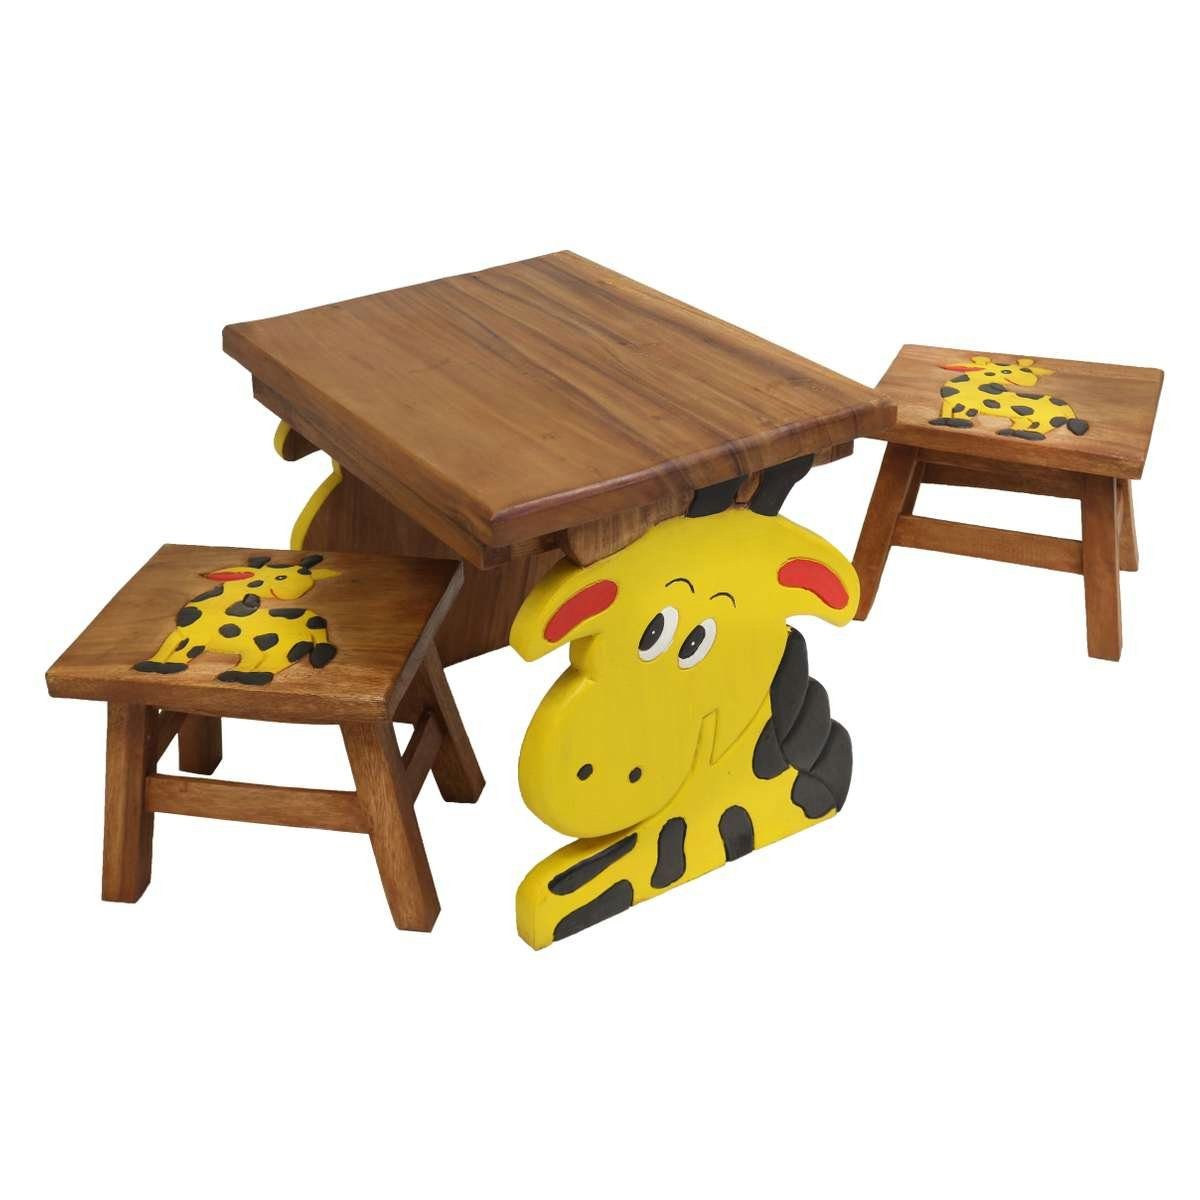 Oriental Galerie Kindersitzgruppe Kindermöbel Set Eckiger Kindertisch mit 2 Hockern Giraffe